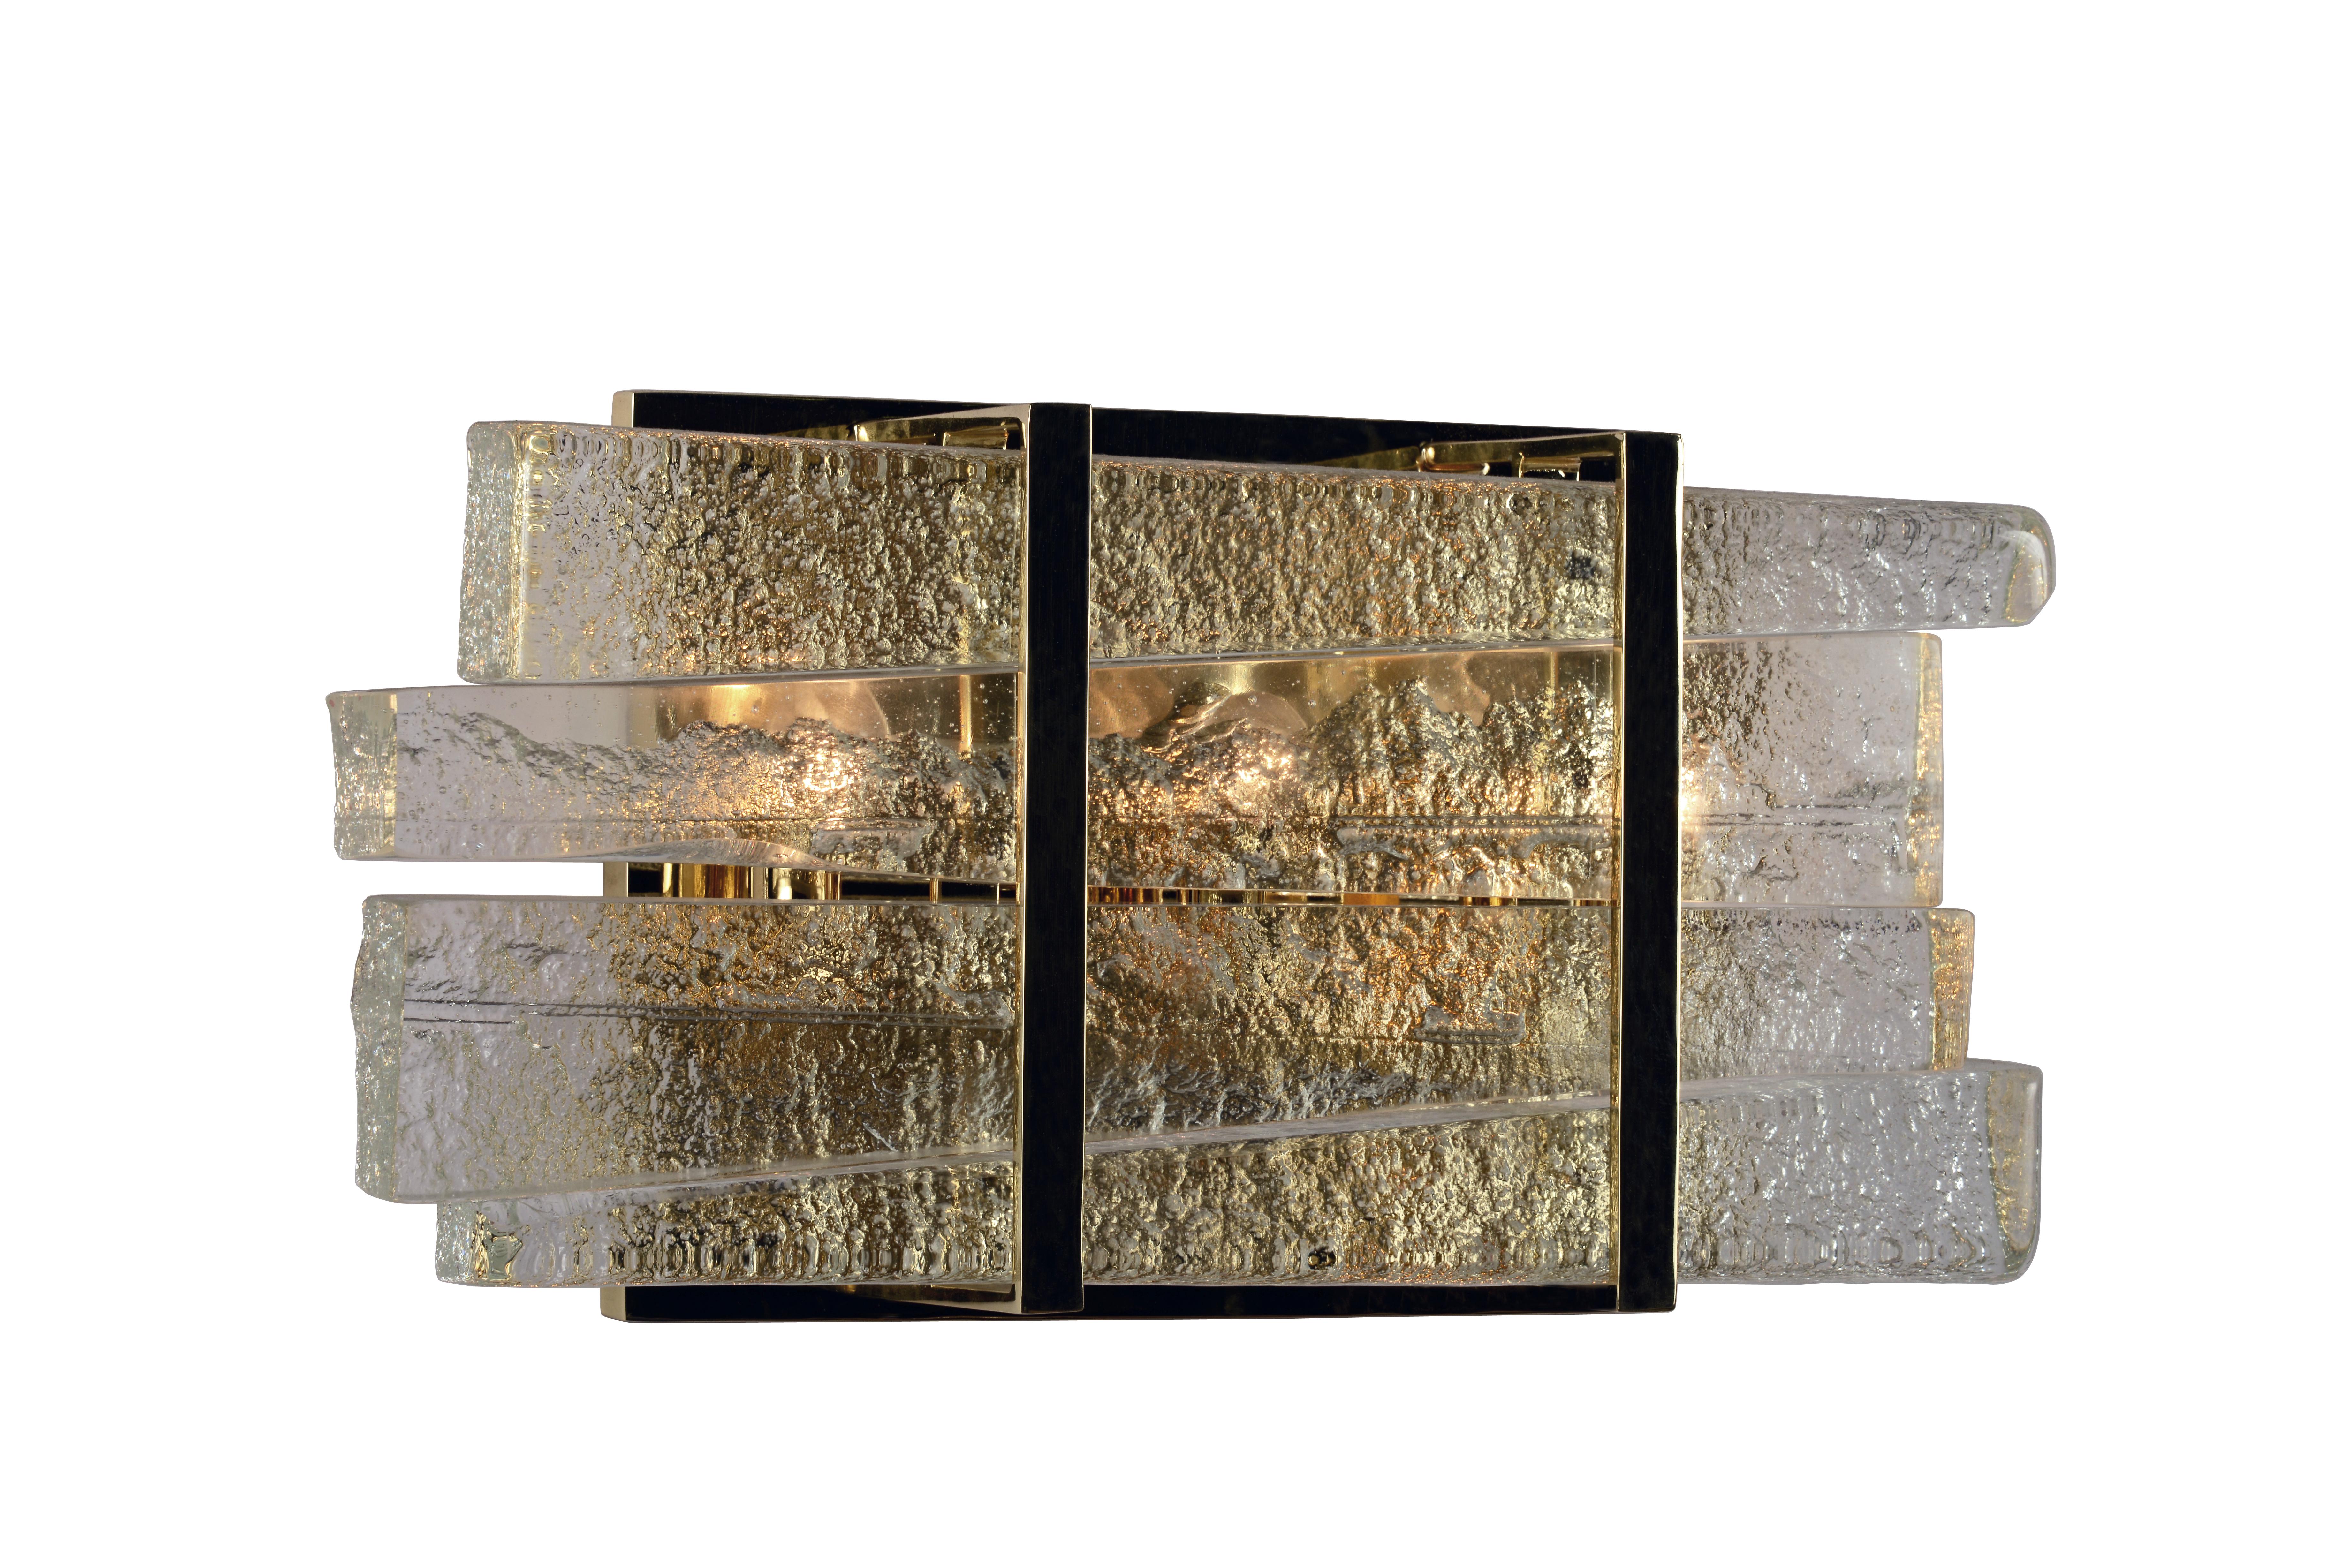 Des lames de verre brut sont empilées dans des bandes architecturales raffinées en bronze brillant ou en nickel nacré.

Les modèles de la collection sont fabriqués individuellement à la main par les artisans qualifiés de notre atelier. Des versions